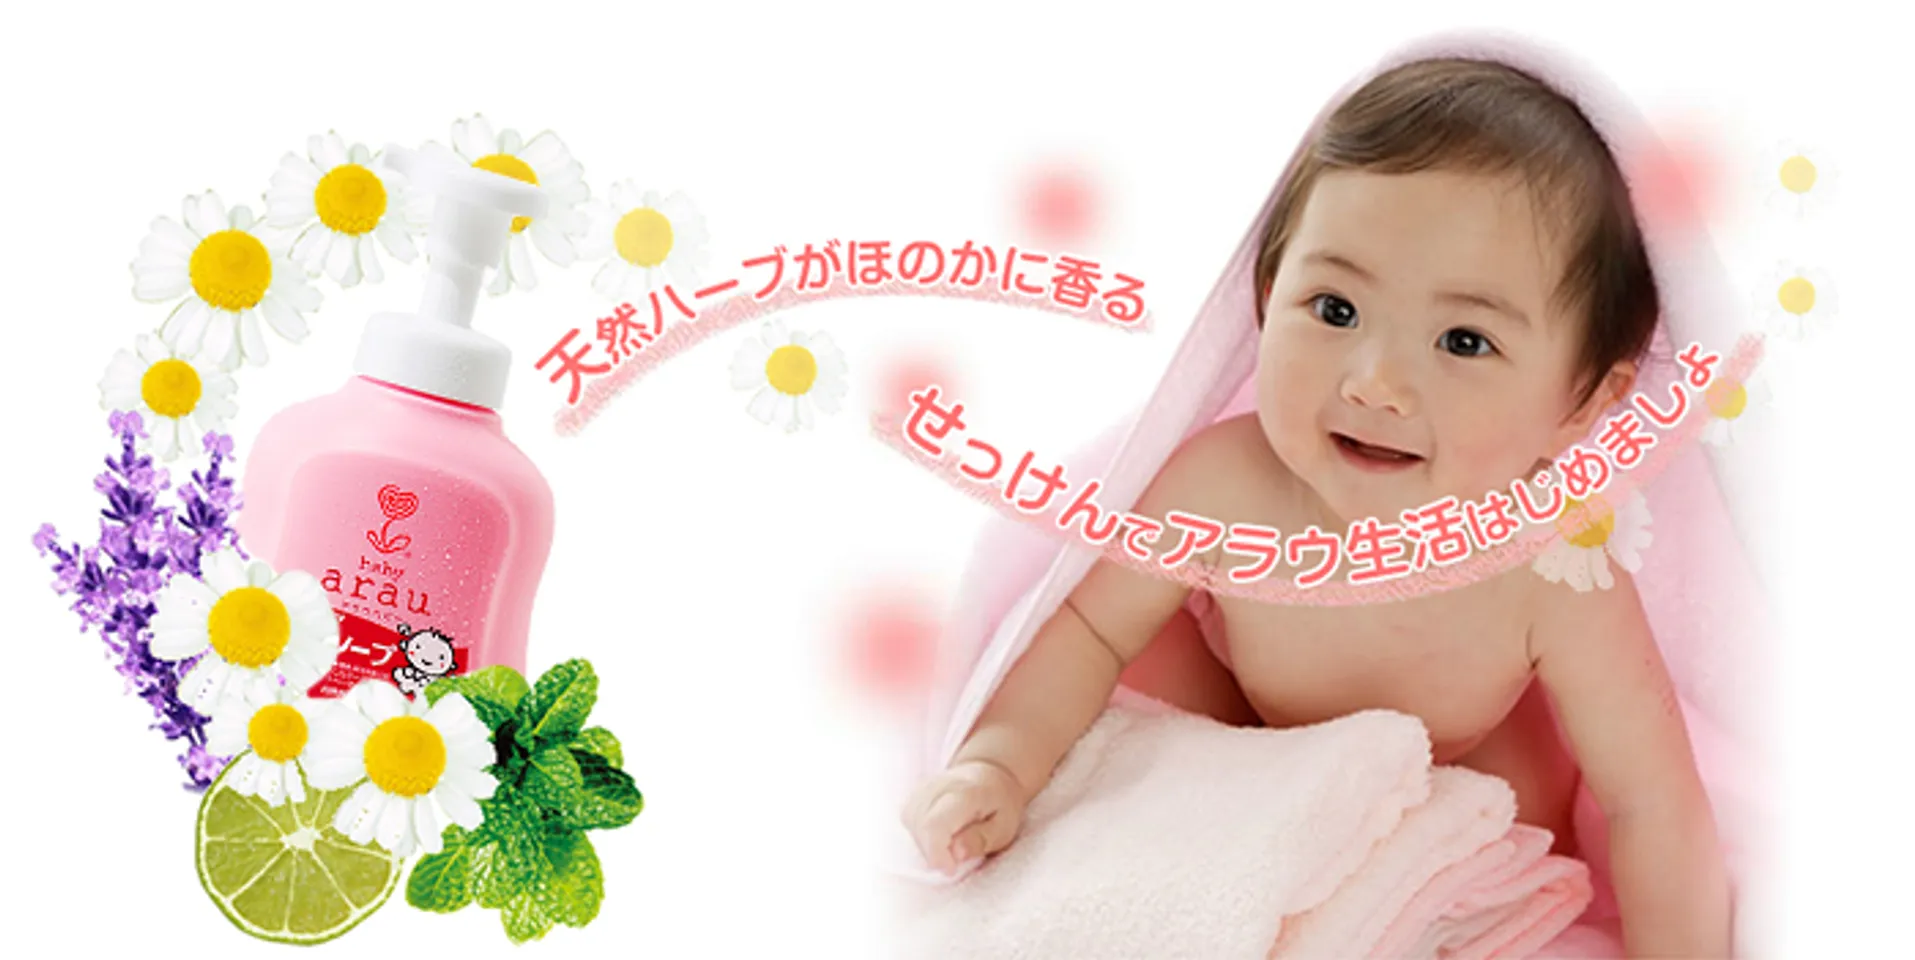 Sữa tắm cho bé Arau Baby Nhật Bản được chiết xuất từ thiên nhiên